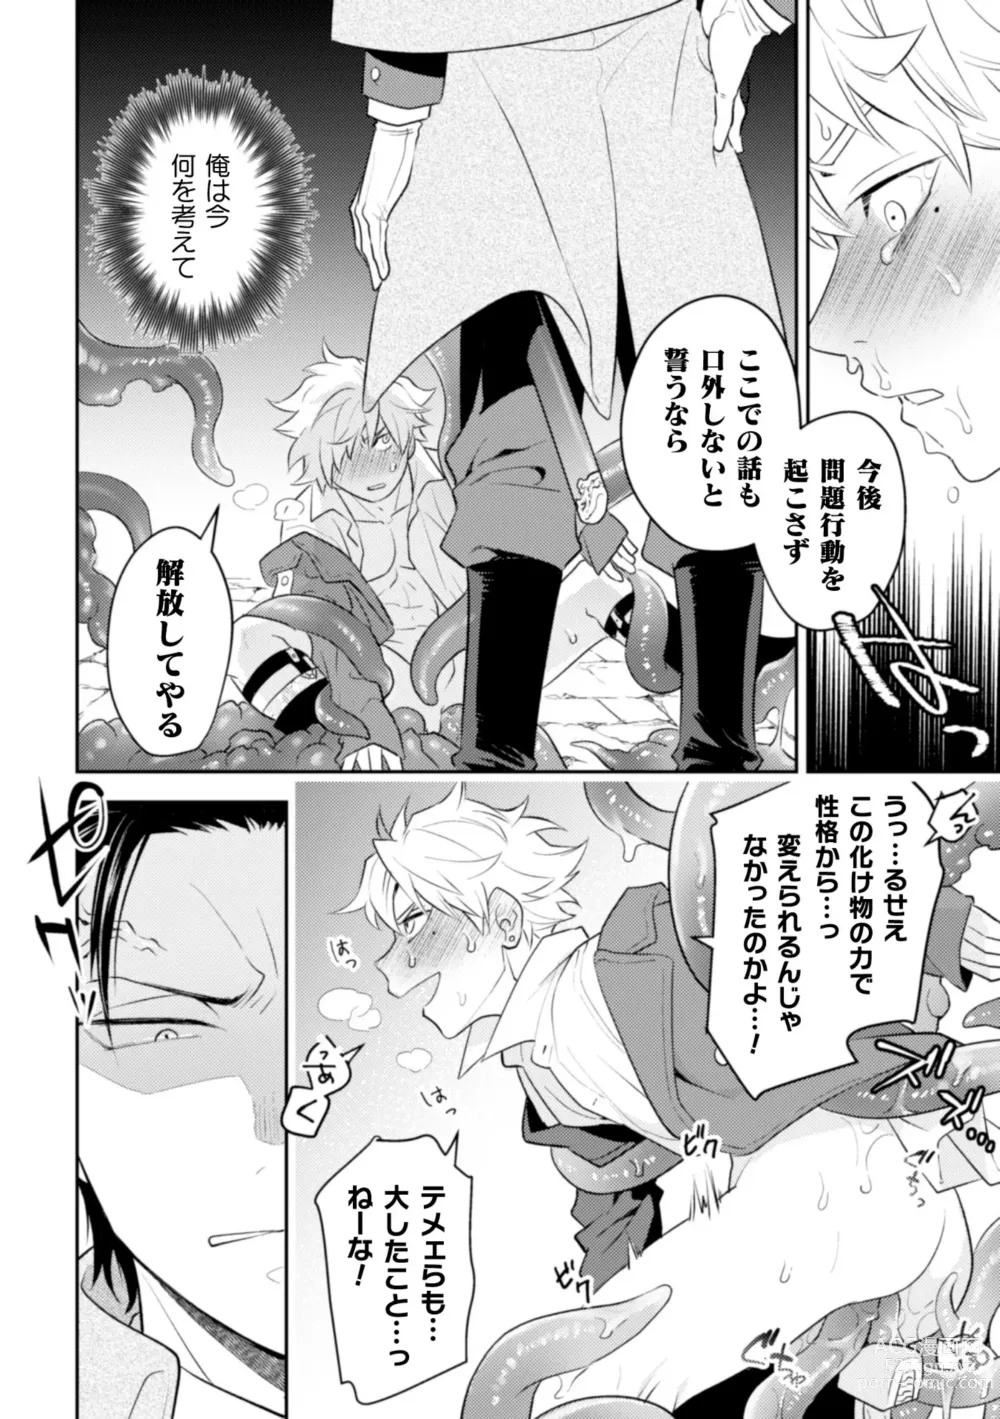 Page 29 of manga Zekkai Rougoku Do S Kanshu o Shokushu Choubatsu